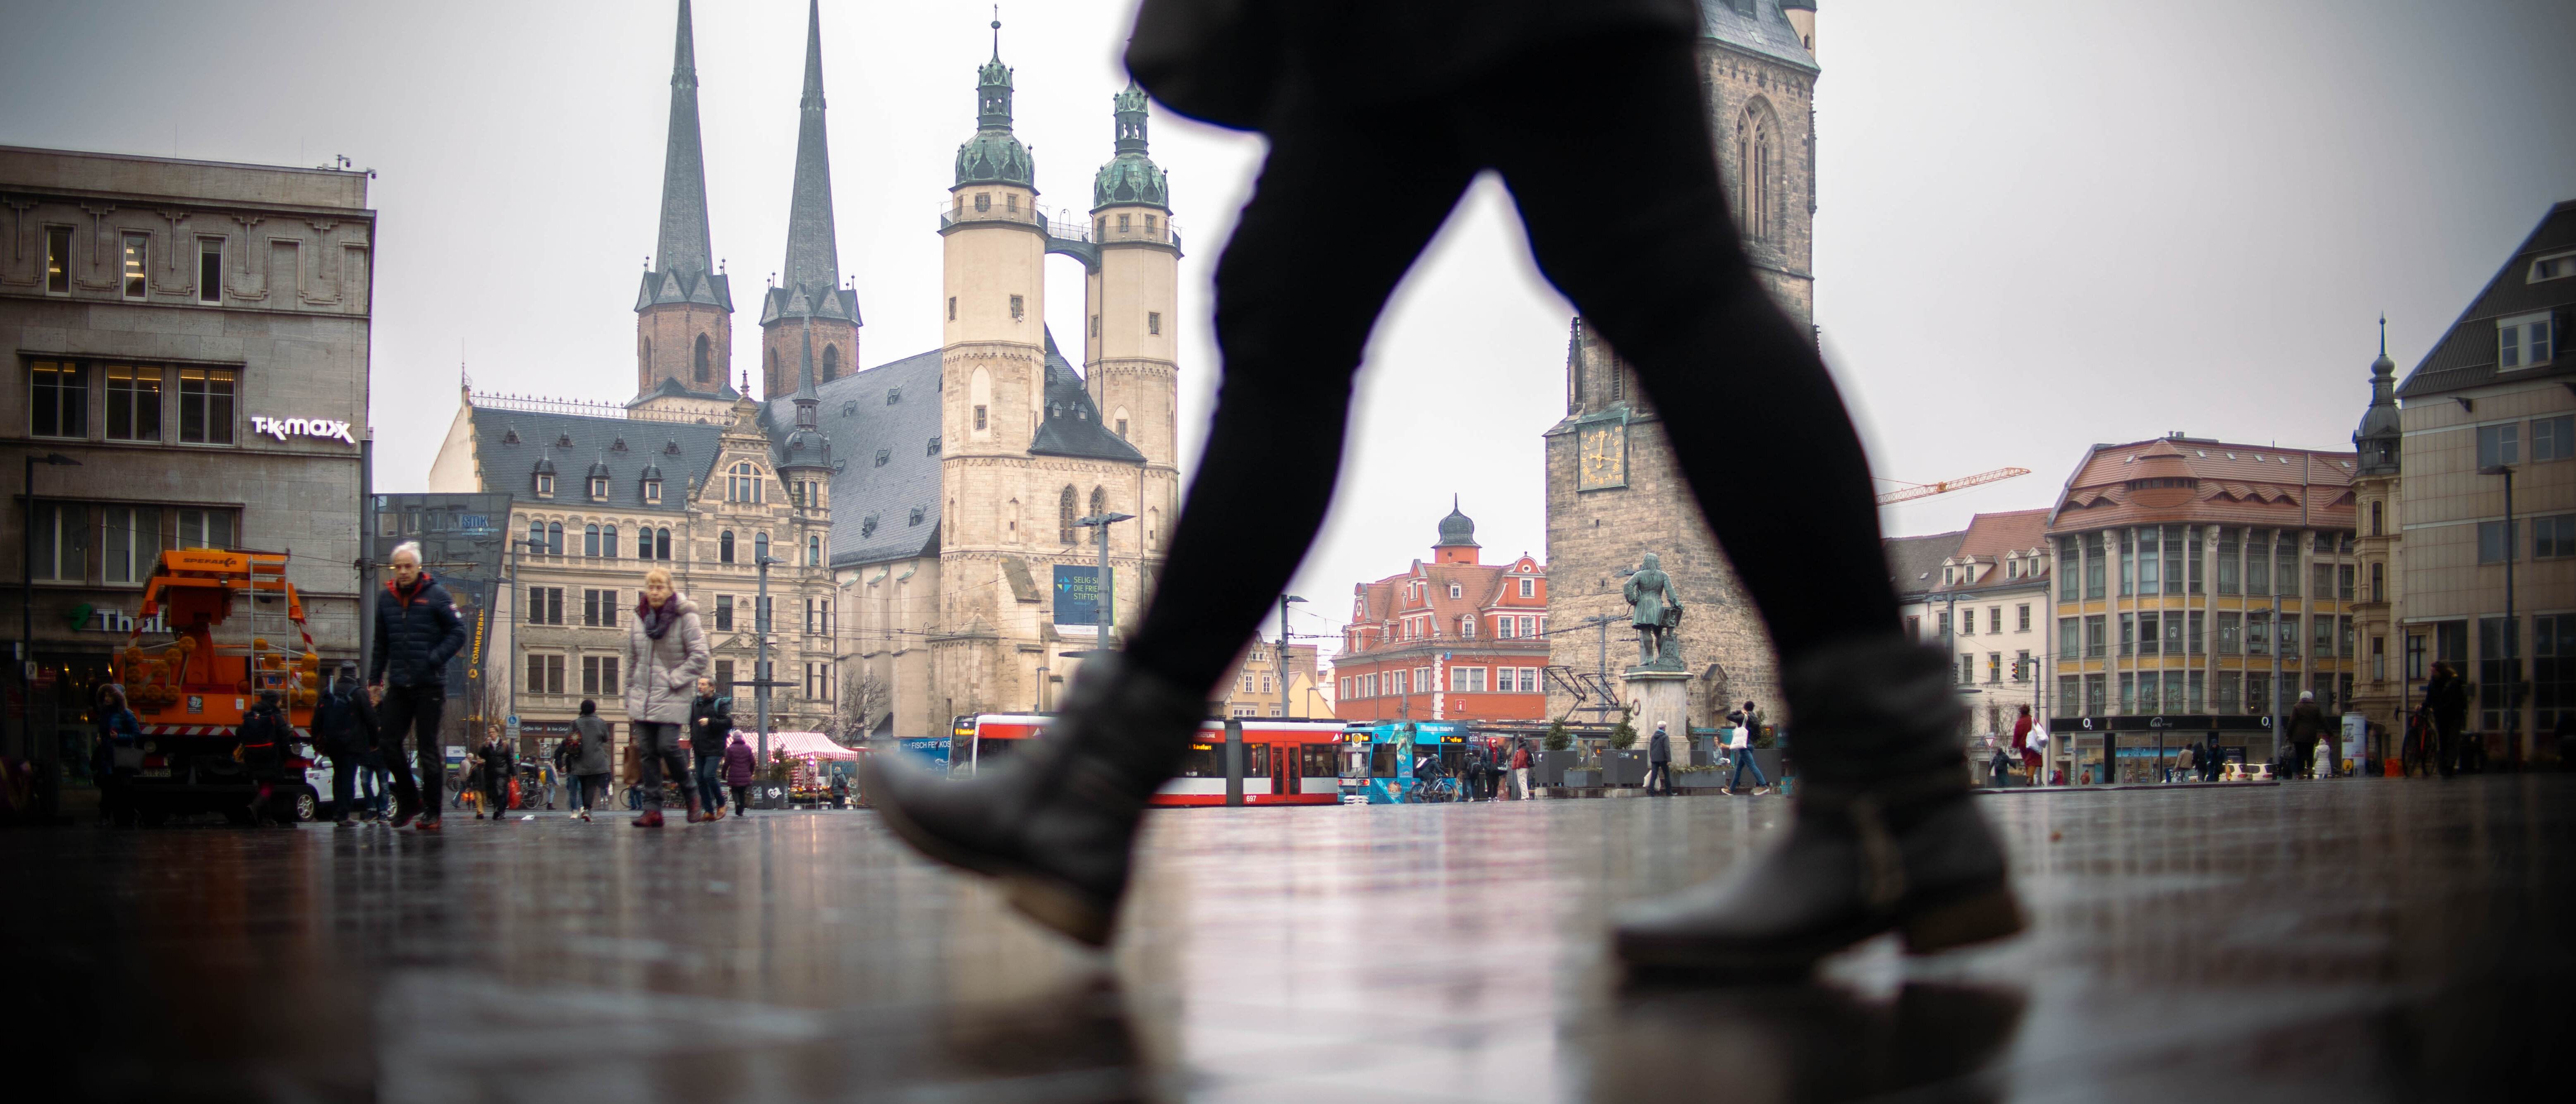 Bild in Froschperspektive mit Blick auf den Marktplatz Halle (Saale) mit Marktkirche, Marktschlösschen, Roter Turm und Händel-Denkmal. Im Vordergrund läuft eine Person durchs Bild, im Hintergrund sind mehrere Personen sowie eine Straßenbahn zu sehen. 